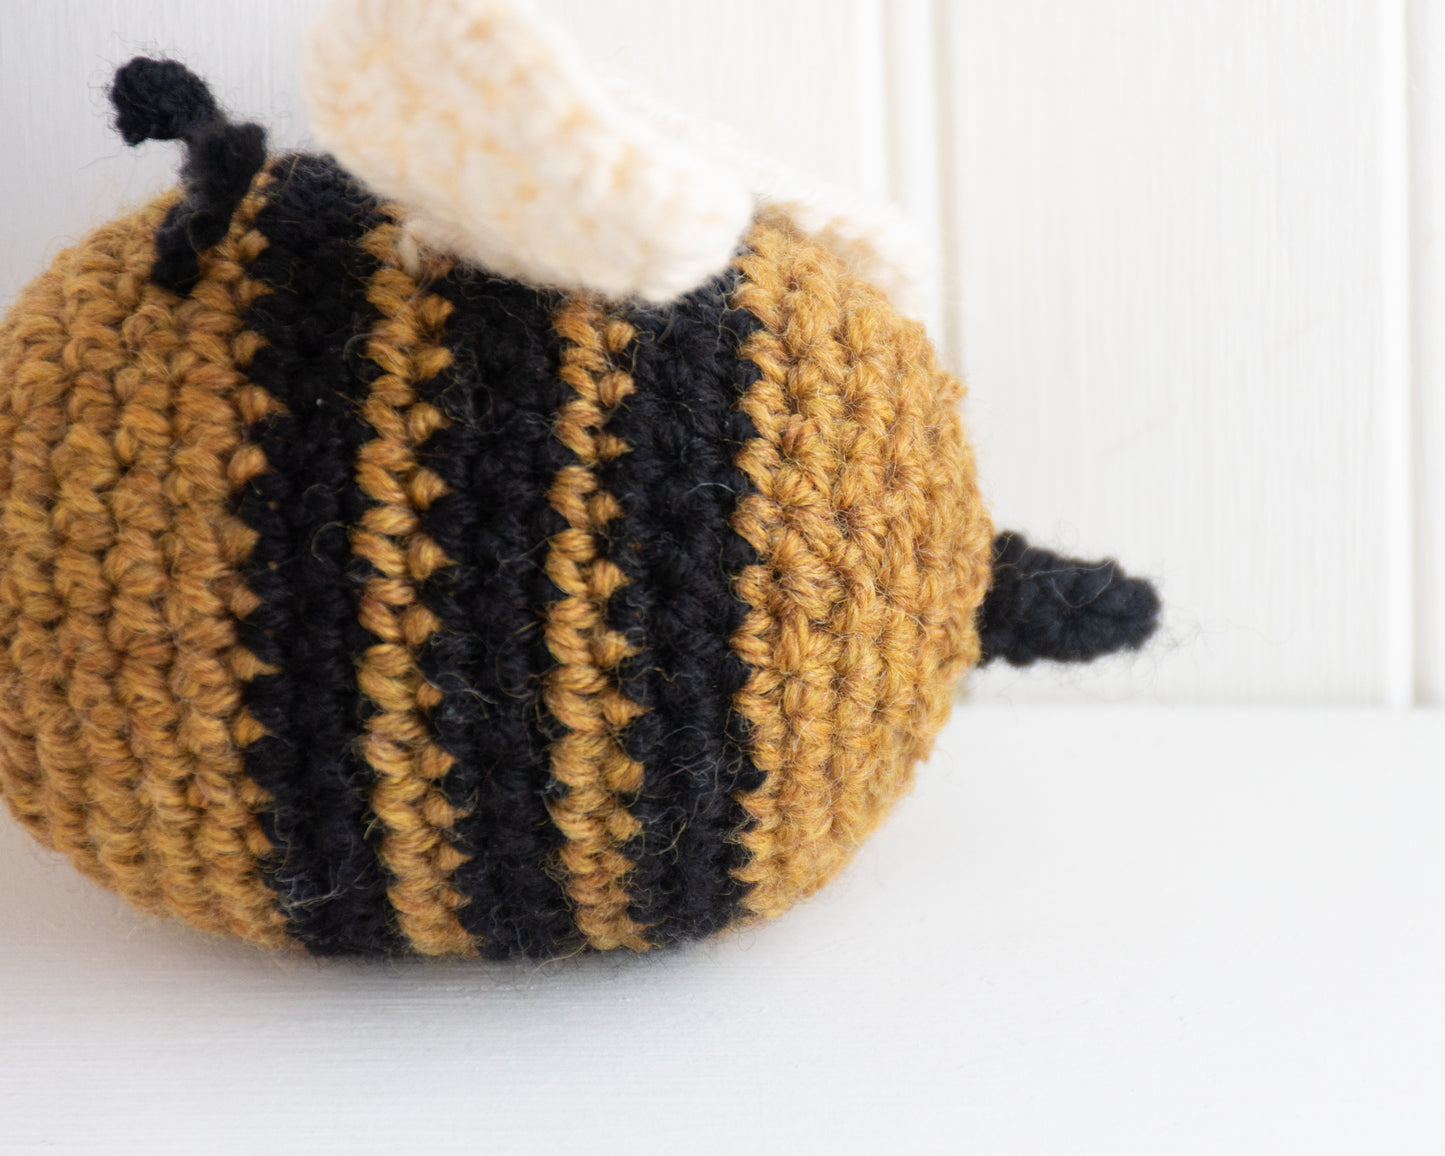 Bailee the Bumblebee - Crochet Pattern